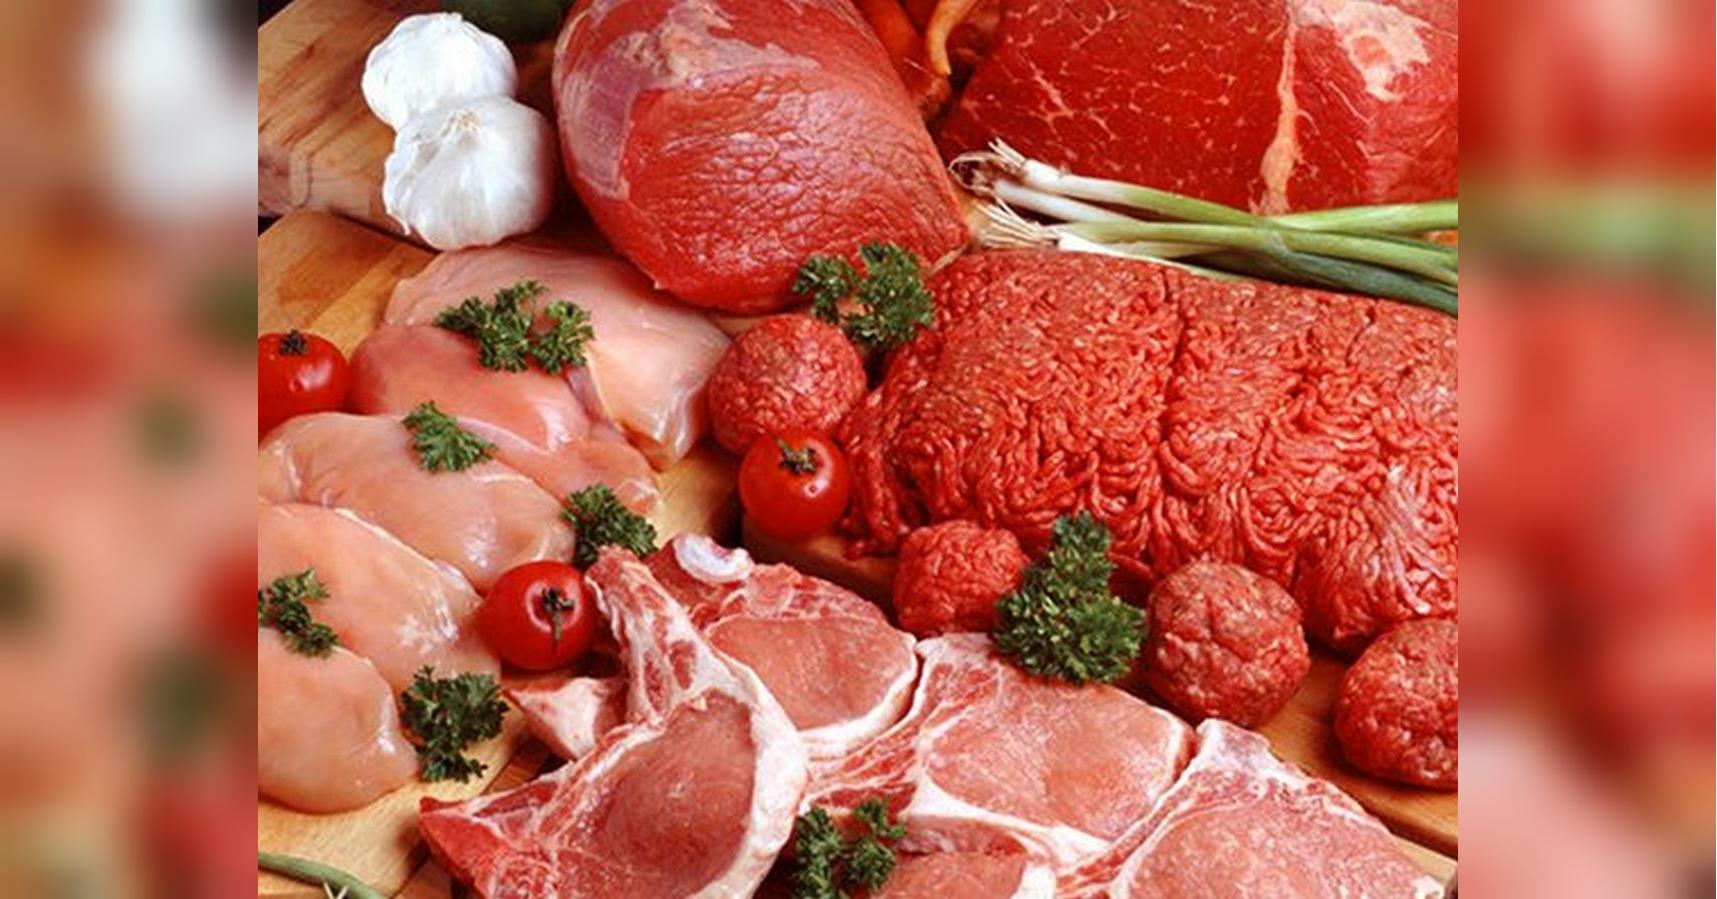 Червоне м’ясо збільшує ризик захворіти на діабет 2 типу: дослідження